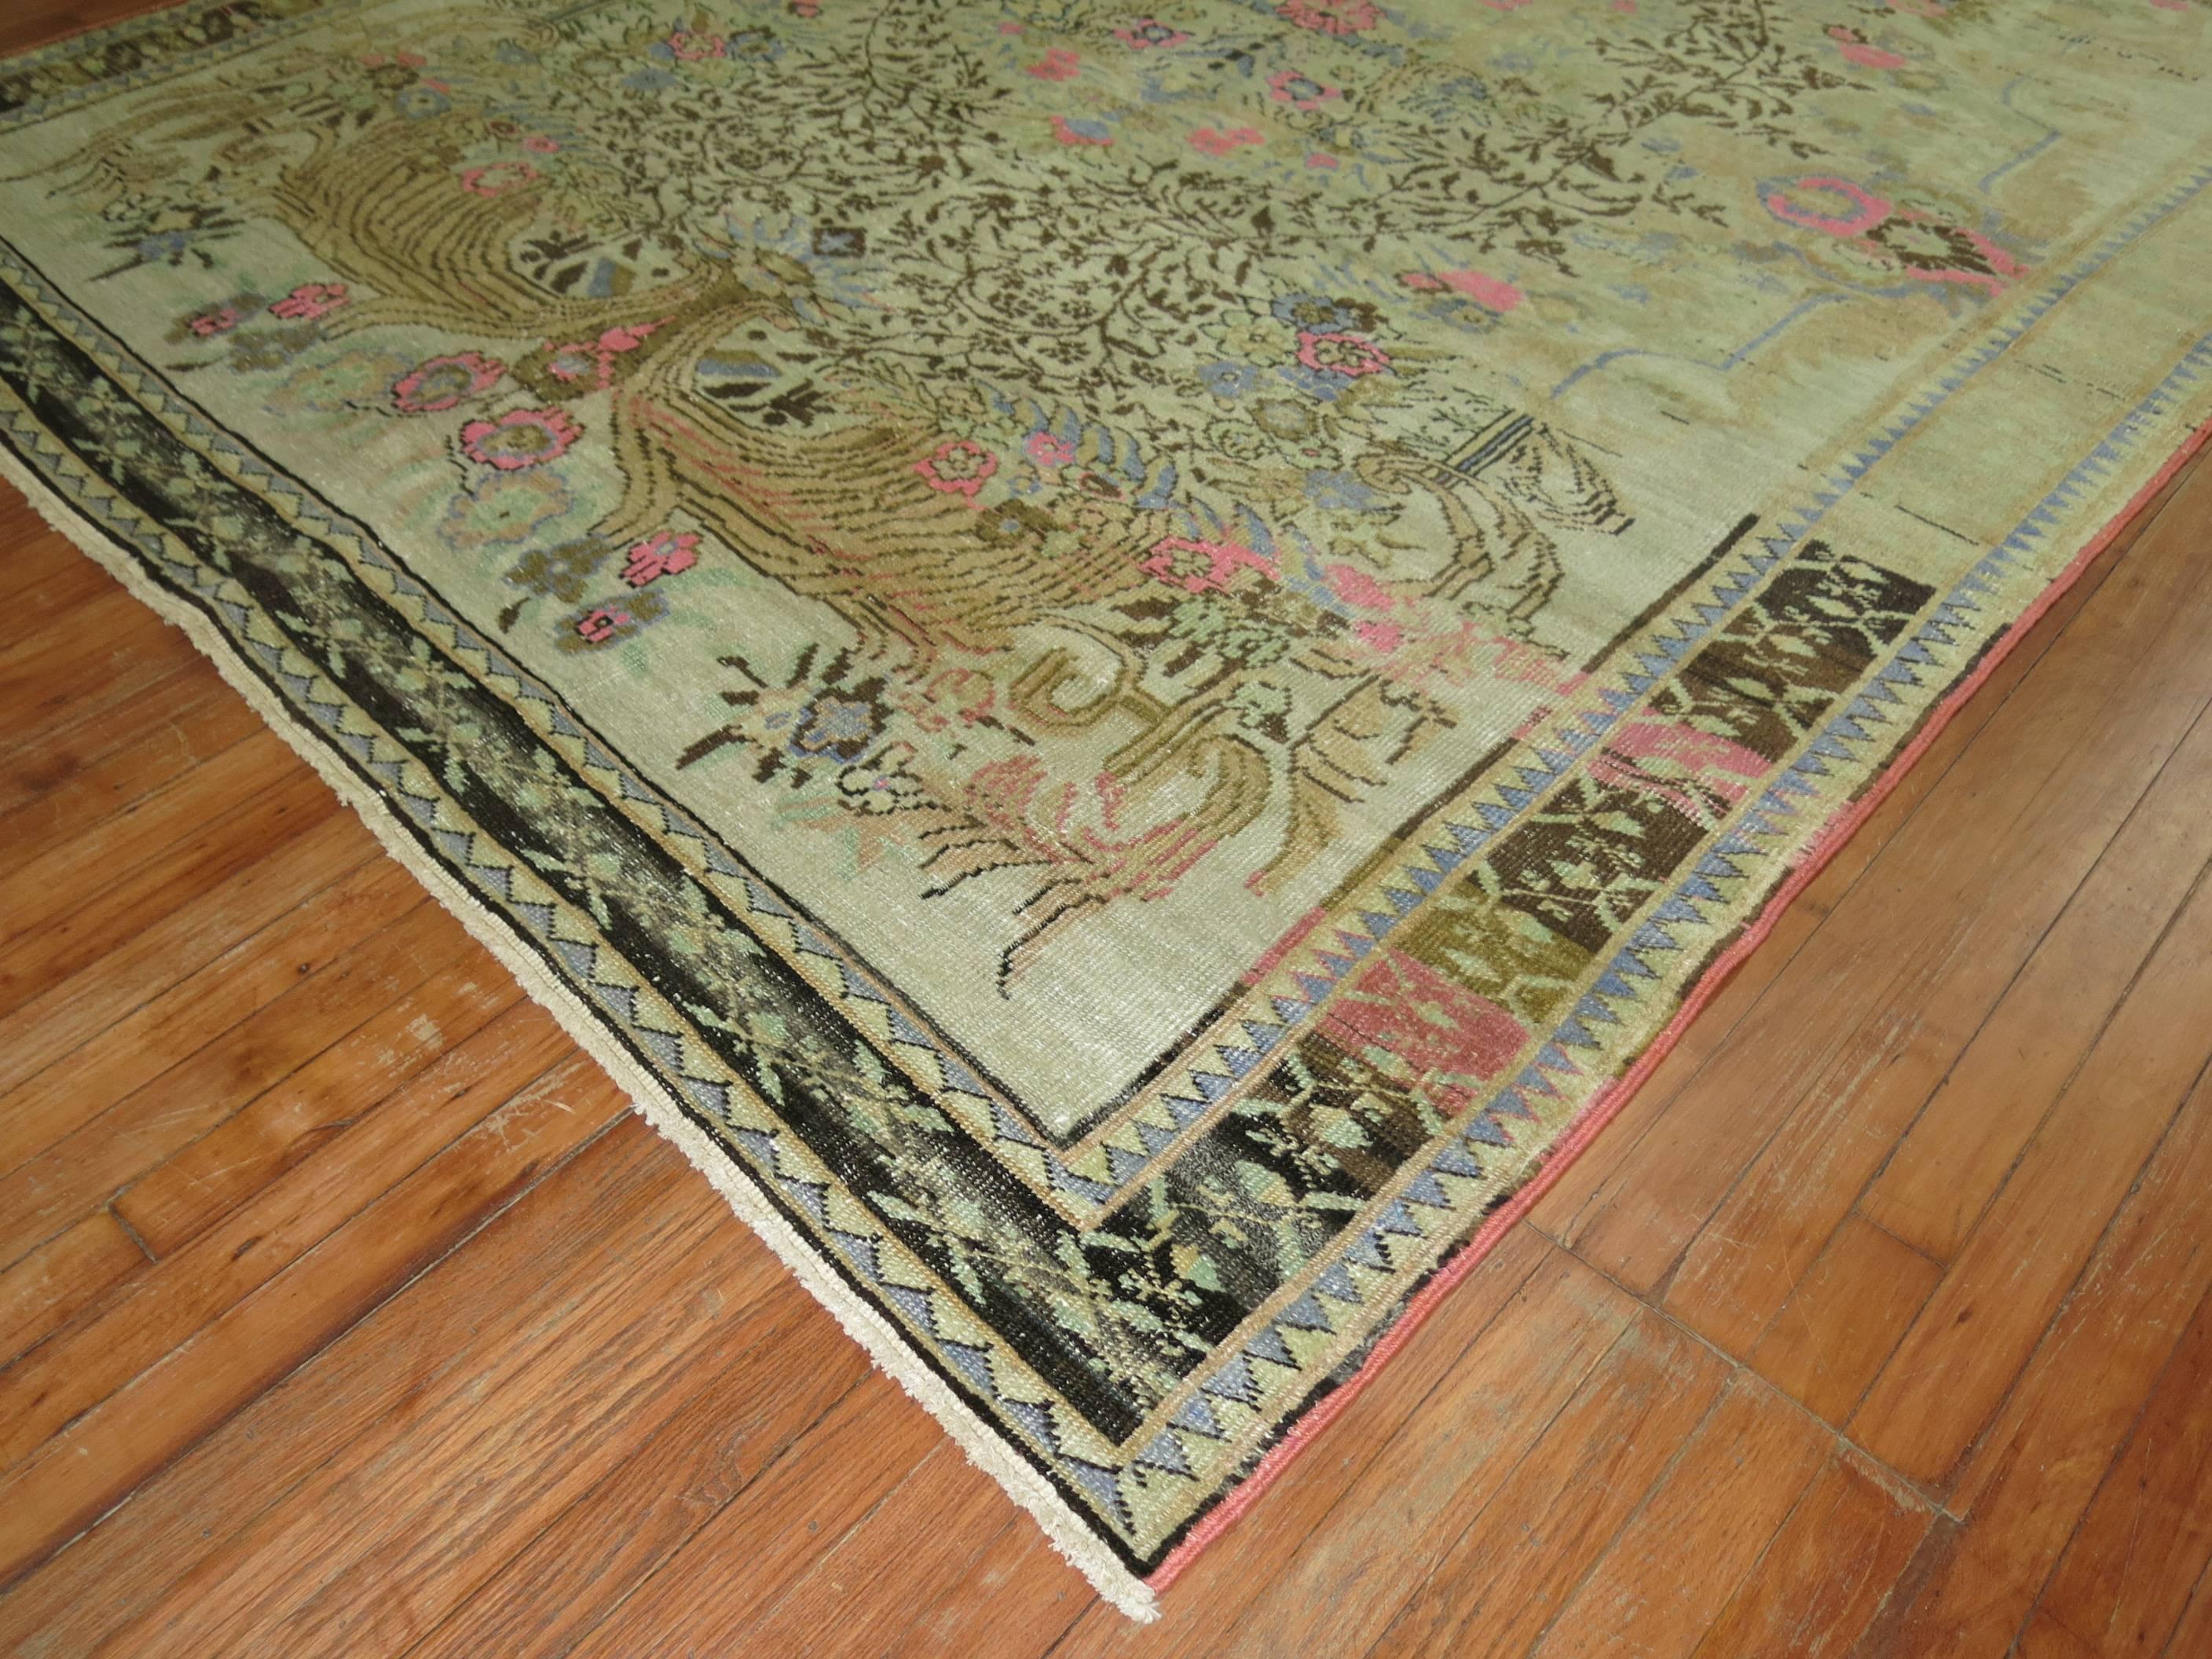 Türkischer anatolischer Teppich im eklektischen Stil mit leuchtend rosa Akzenten, die überall funkeln.